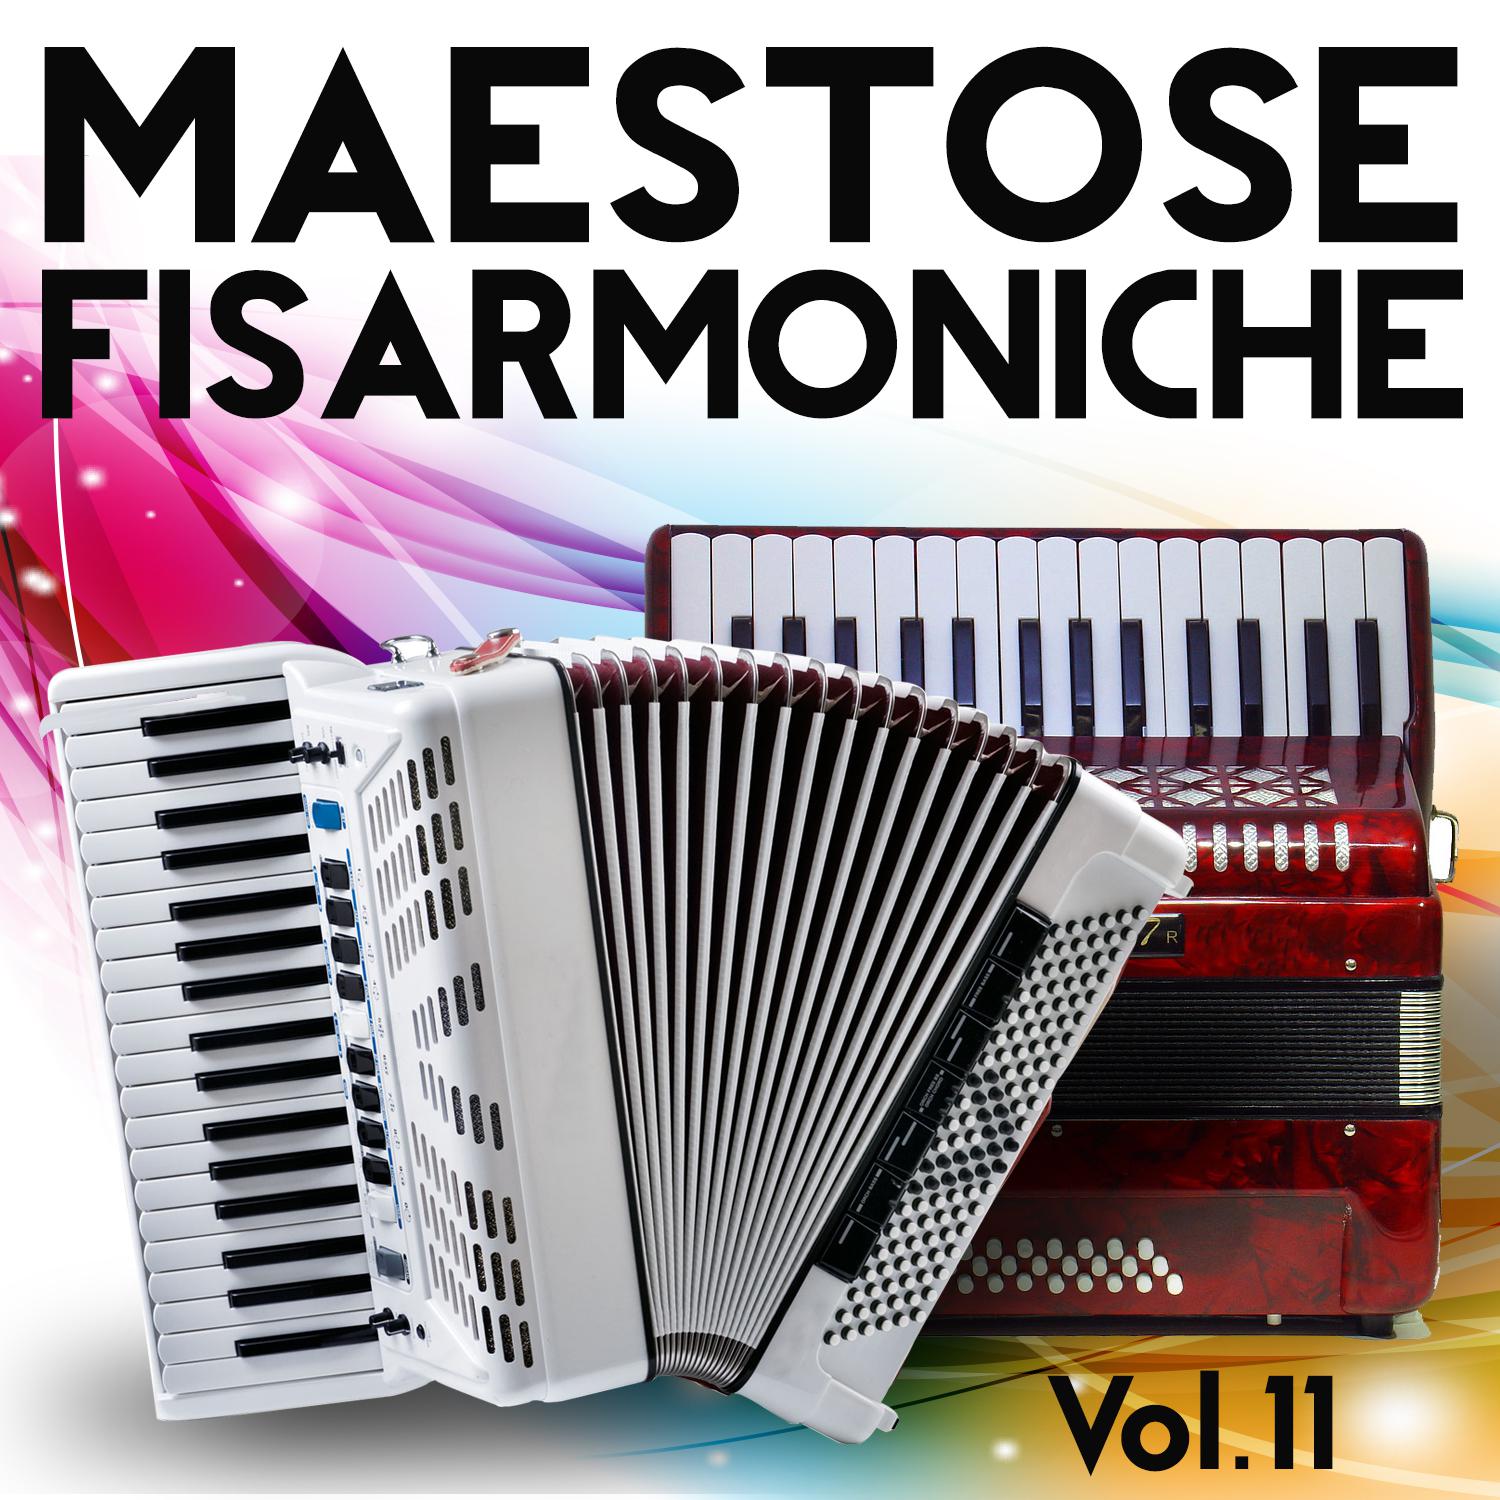 Maestose Fisarmoniche Vol. 11